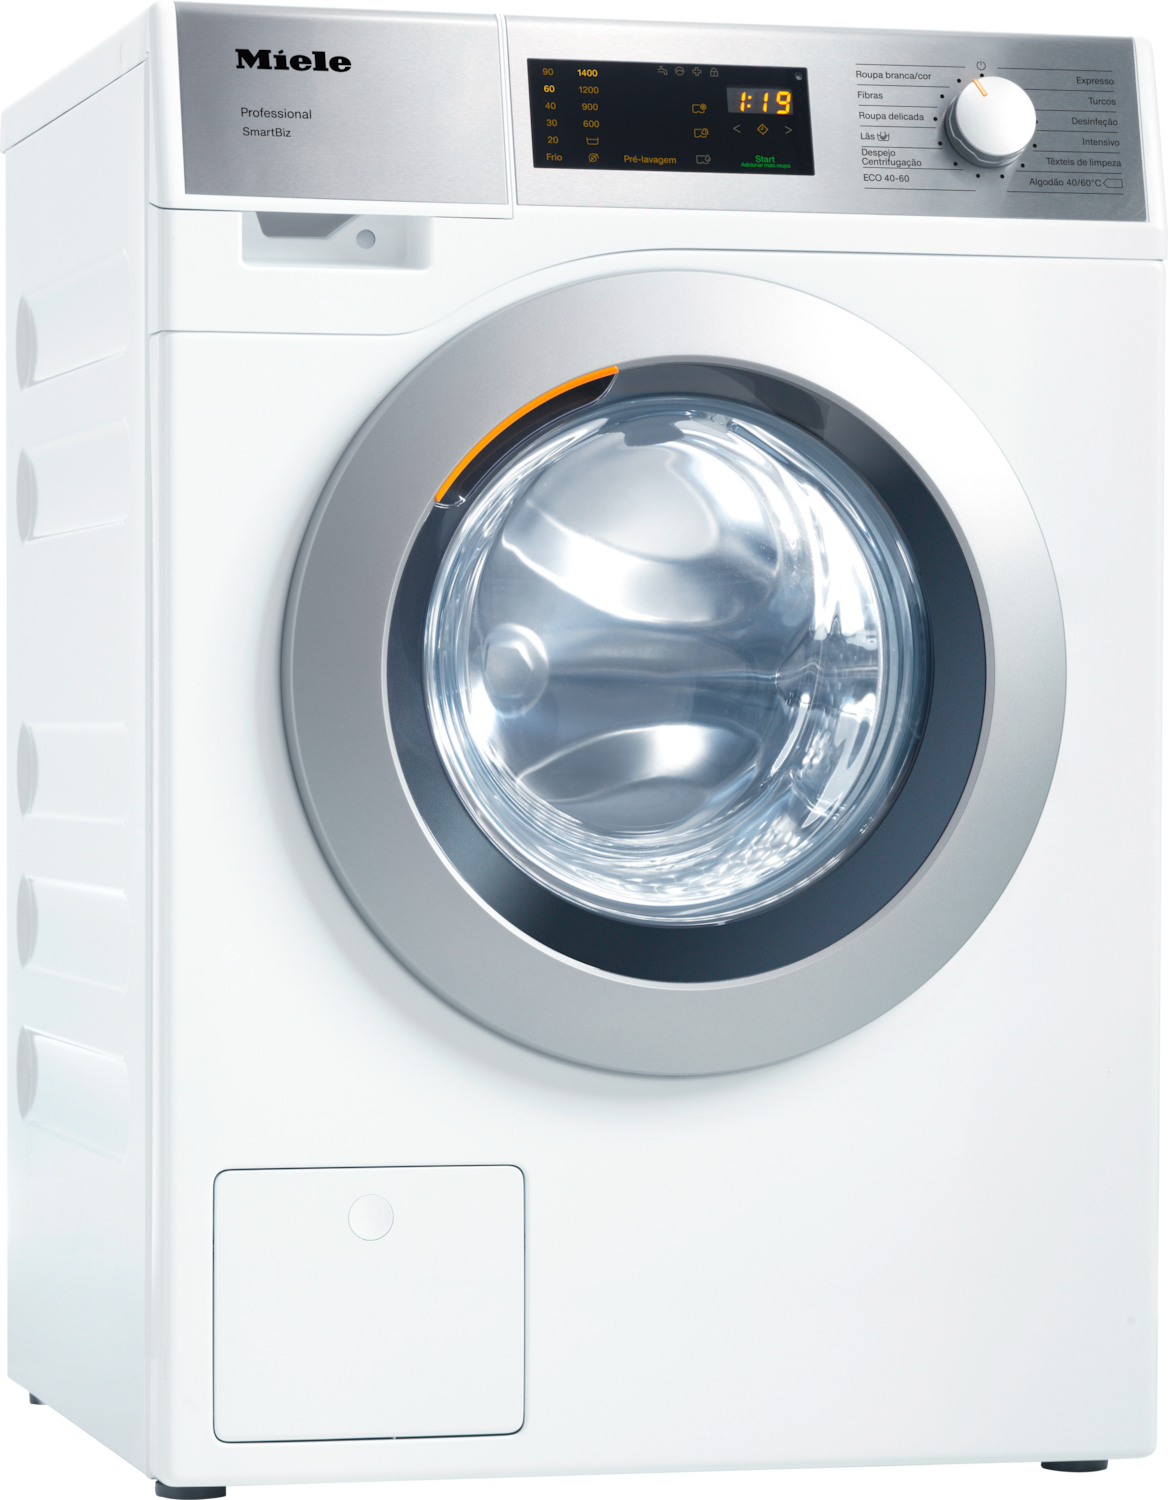 PWM 300 SmartBiz [EL DP] Máquina de lavar roupa com aquecimento elétrico fotografia do produto Front View ZOOM